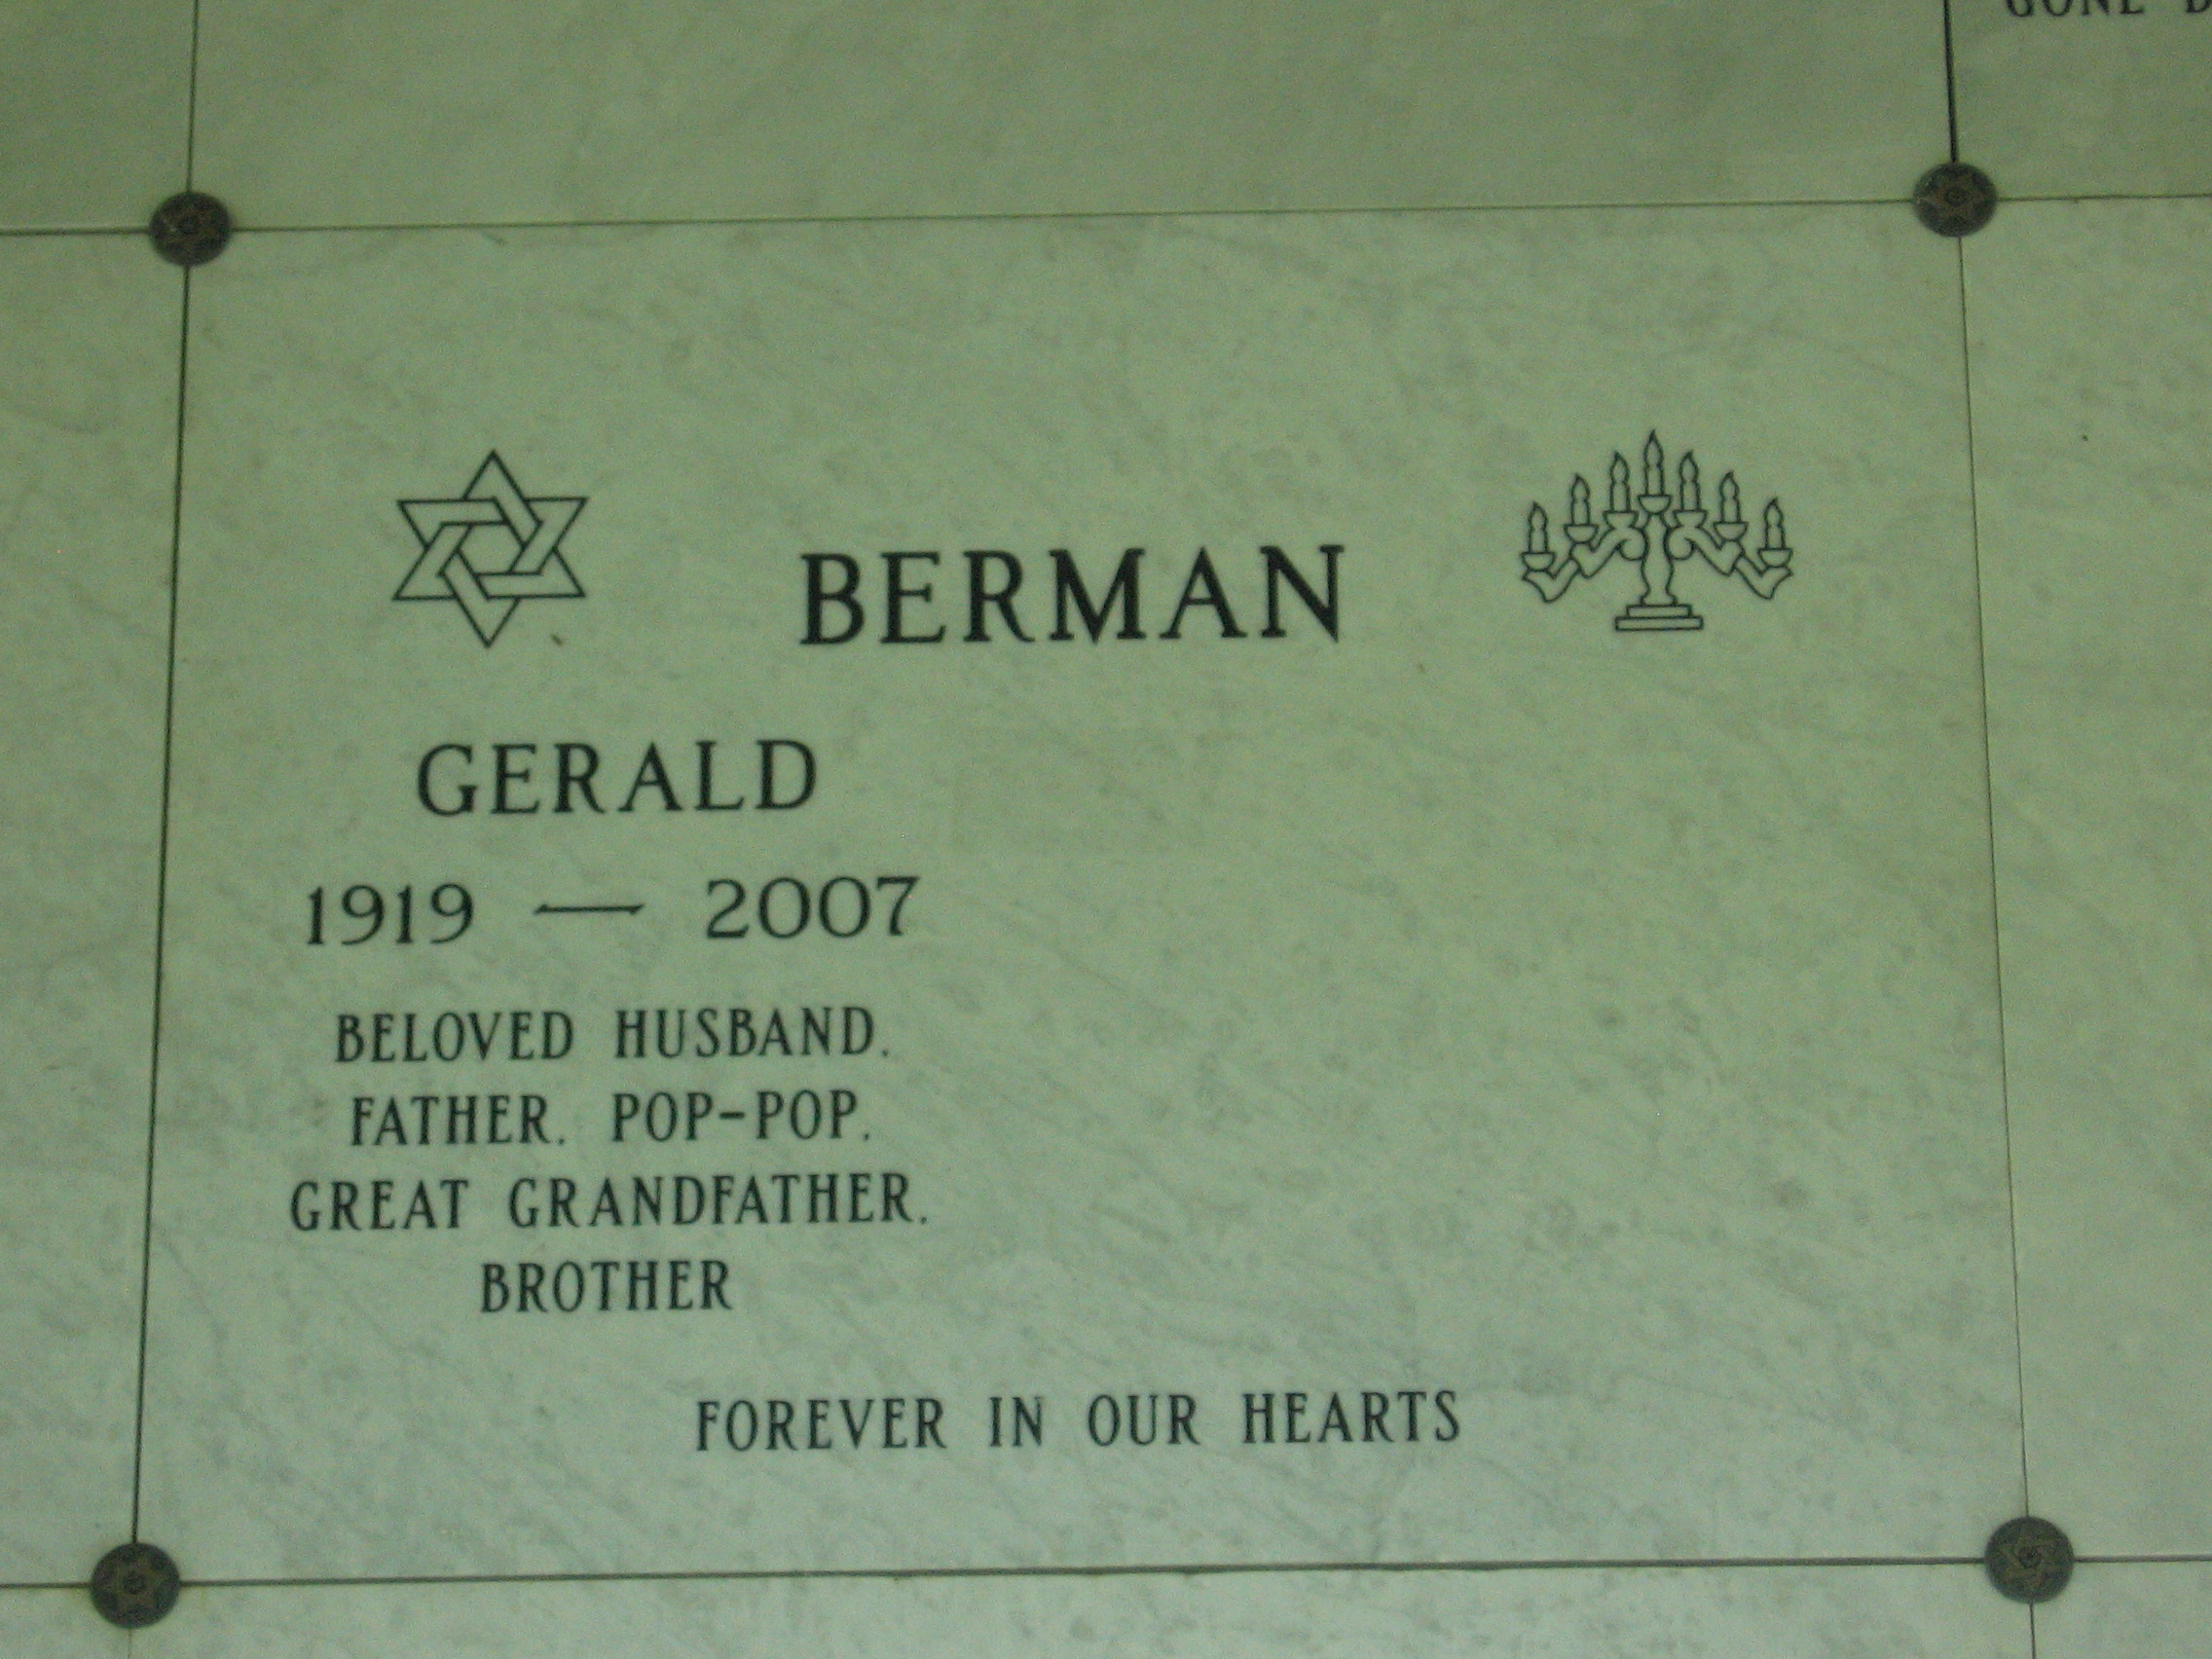 Gerald Berman